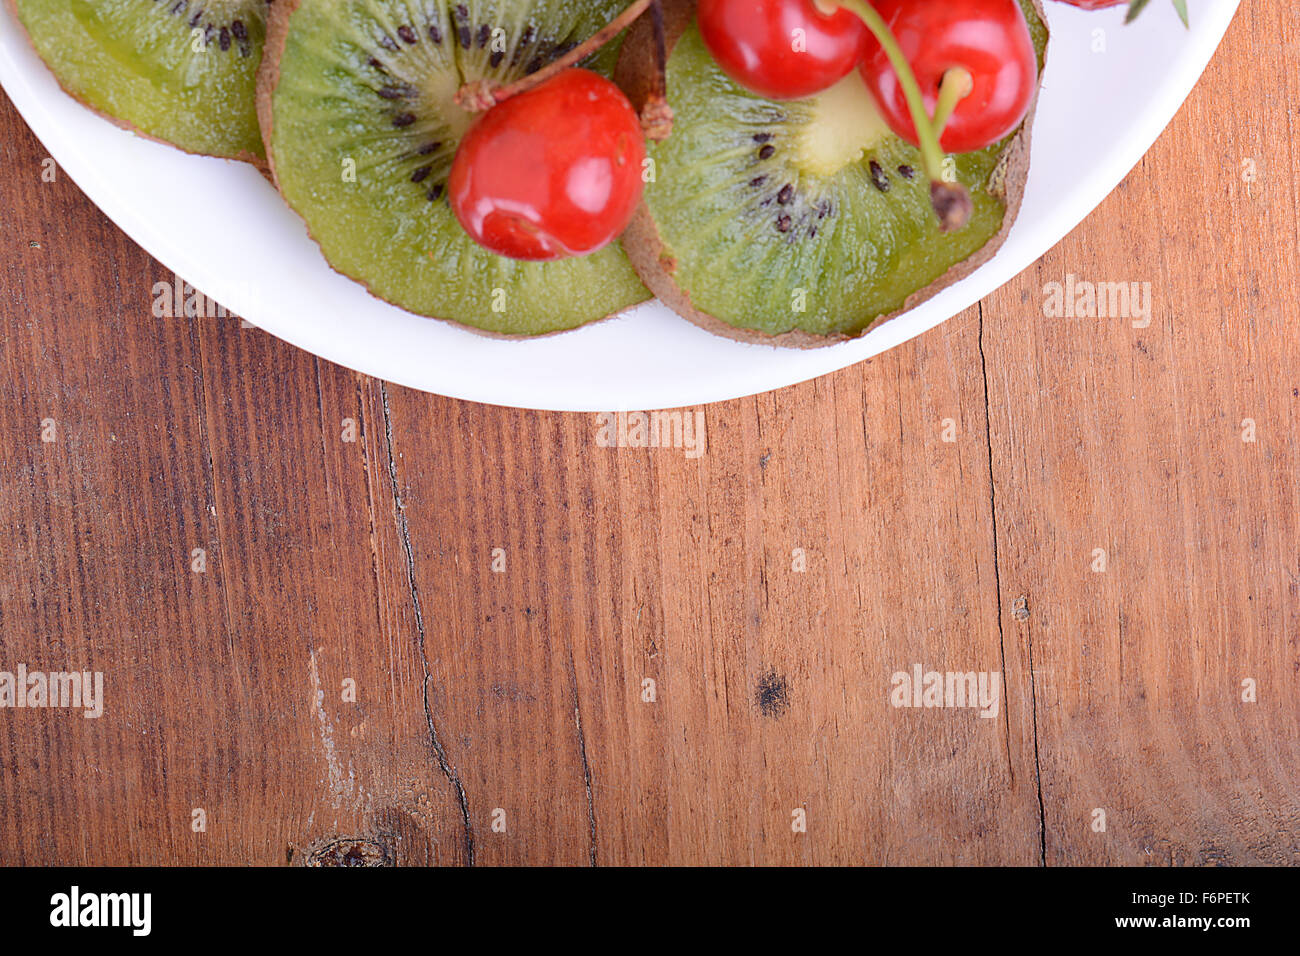 Fruits santé avec cerise, tranches de kiwi sur plaque de bois Banque D'Images